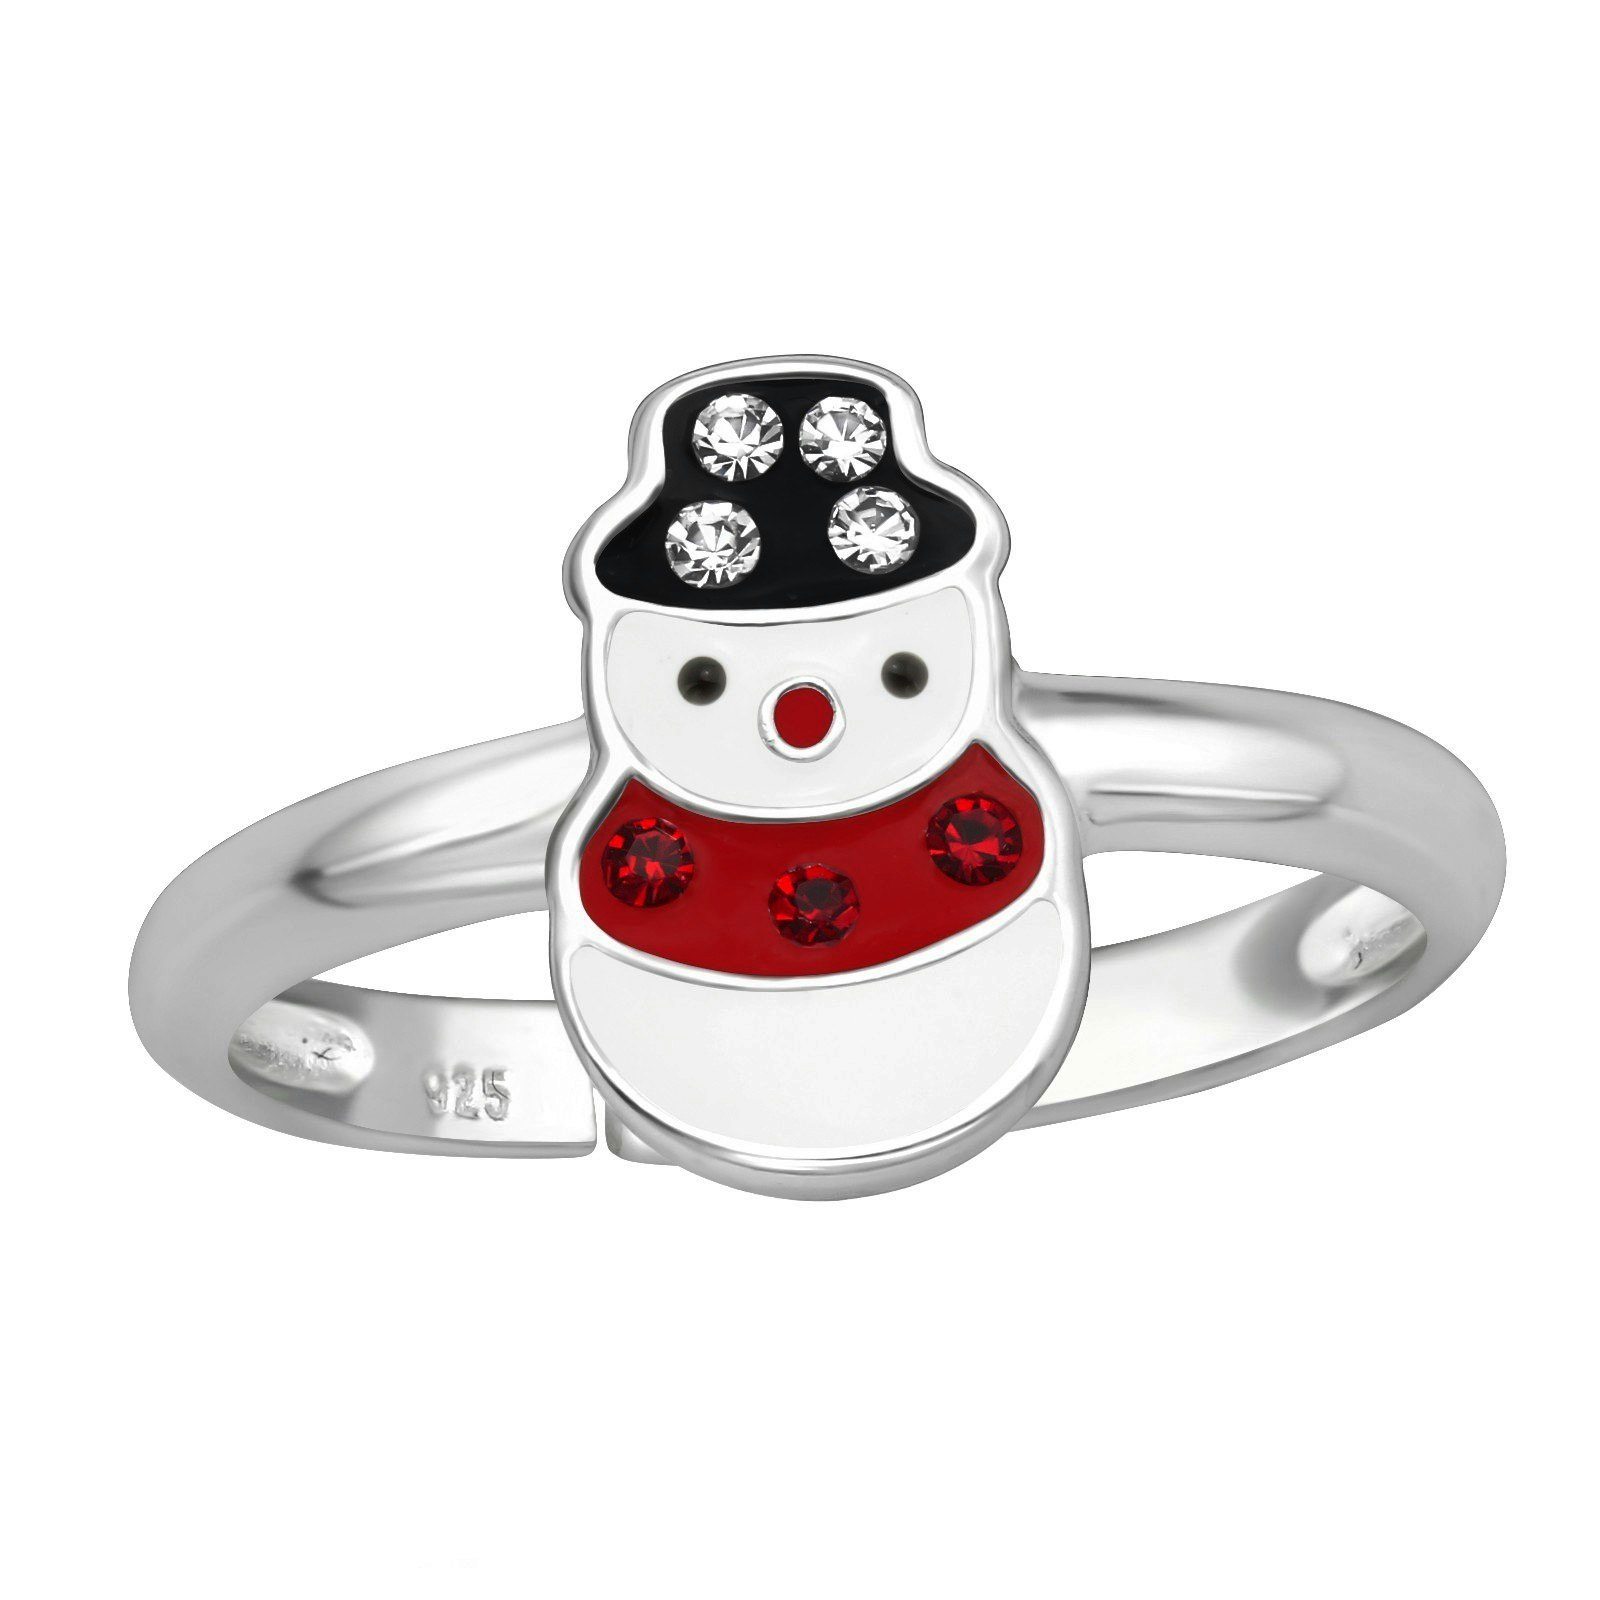 Barnring Snögubbe - söta julsmycken till barn i äkta silver - fin ring med julmotiv